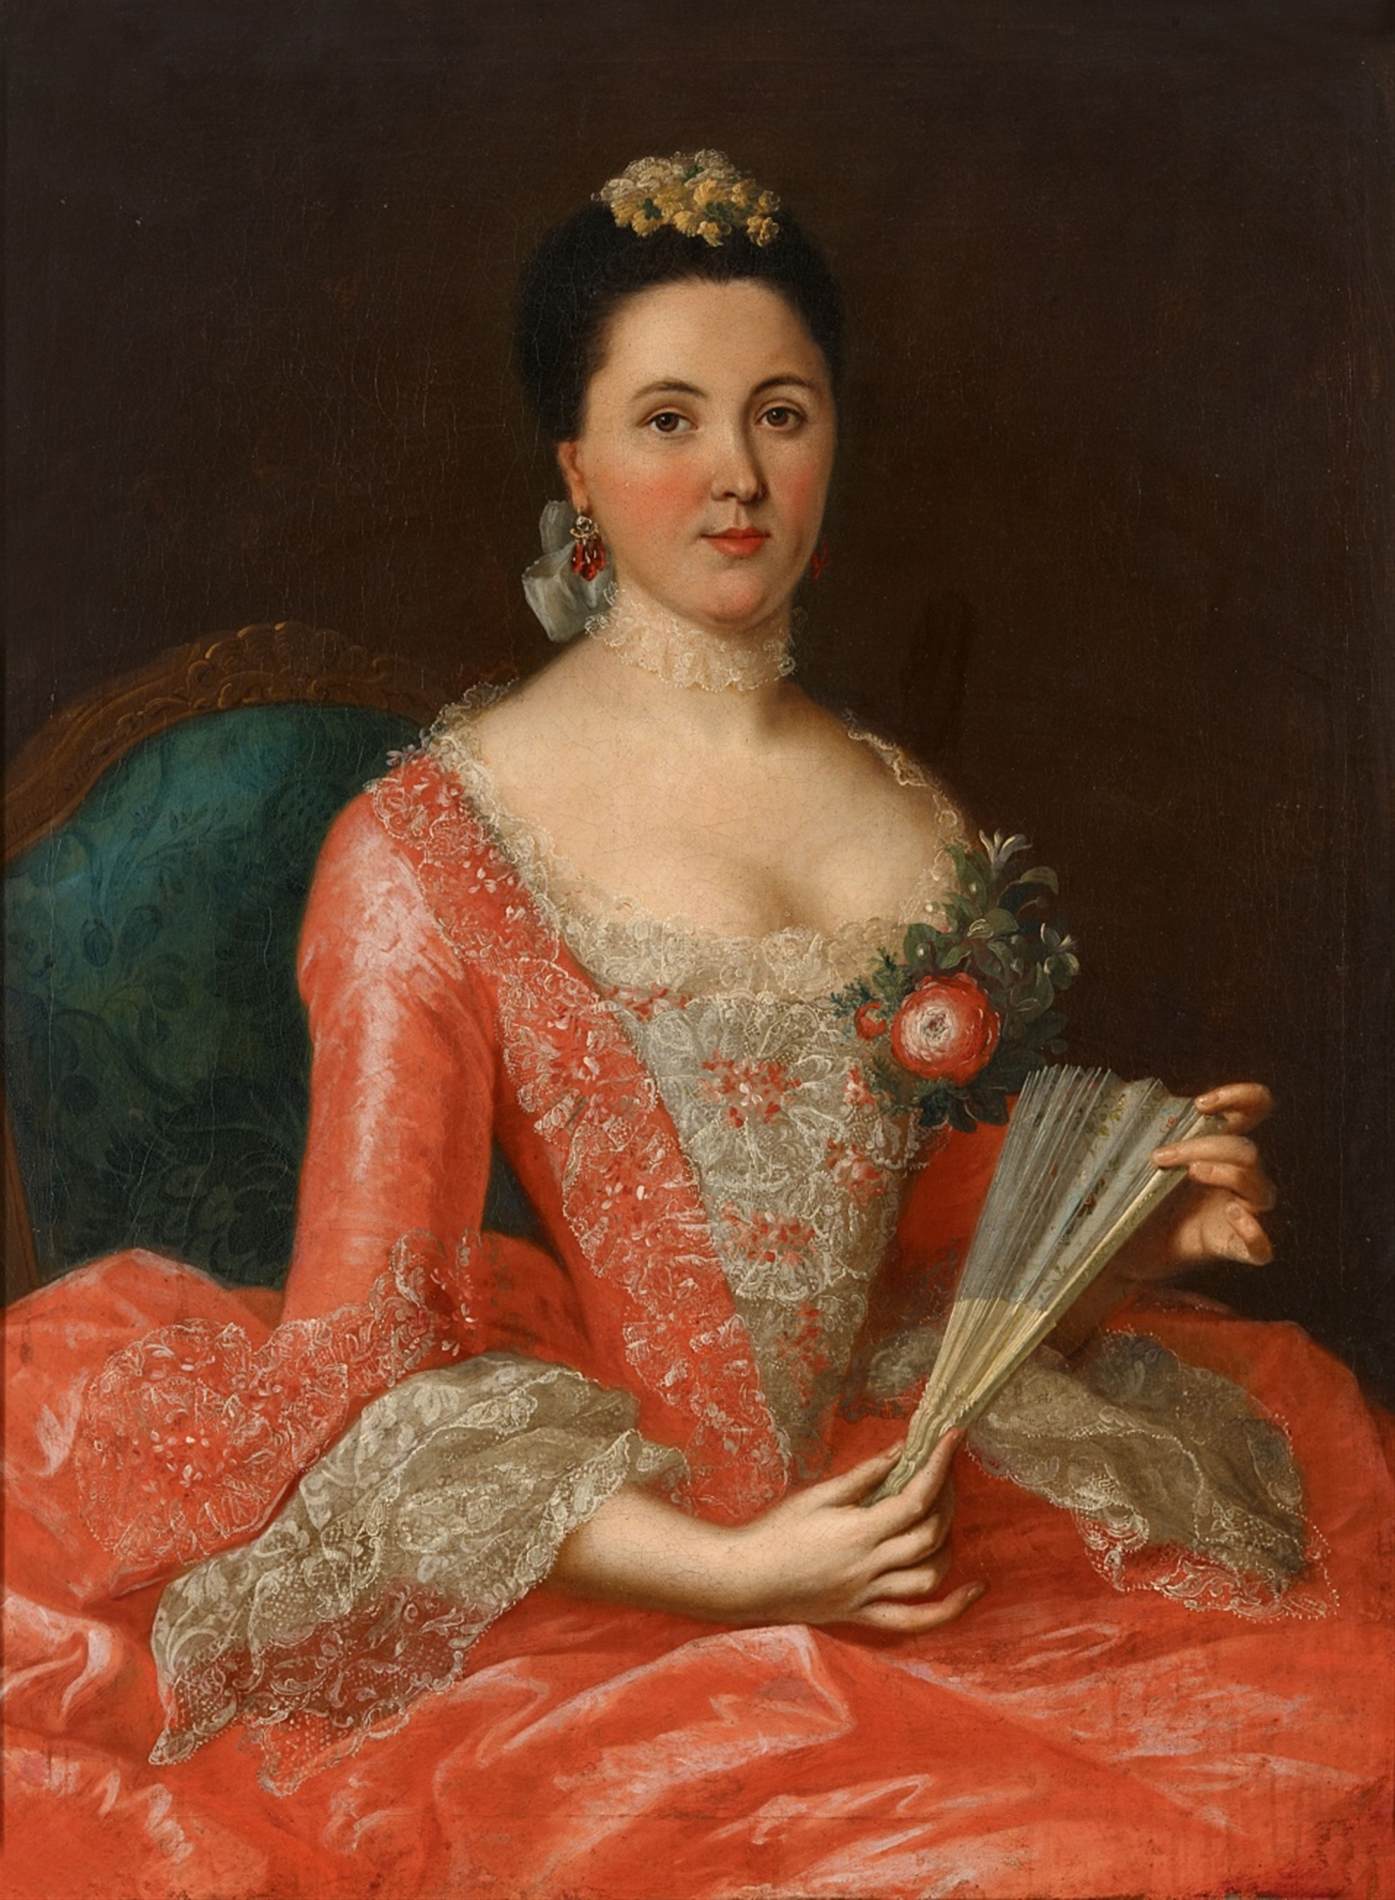 Portrait d'une femme aristocratique